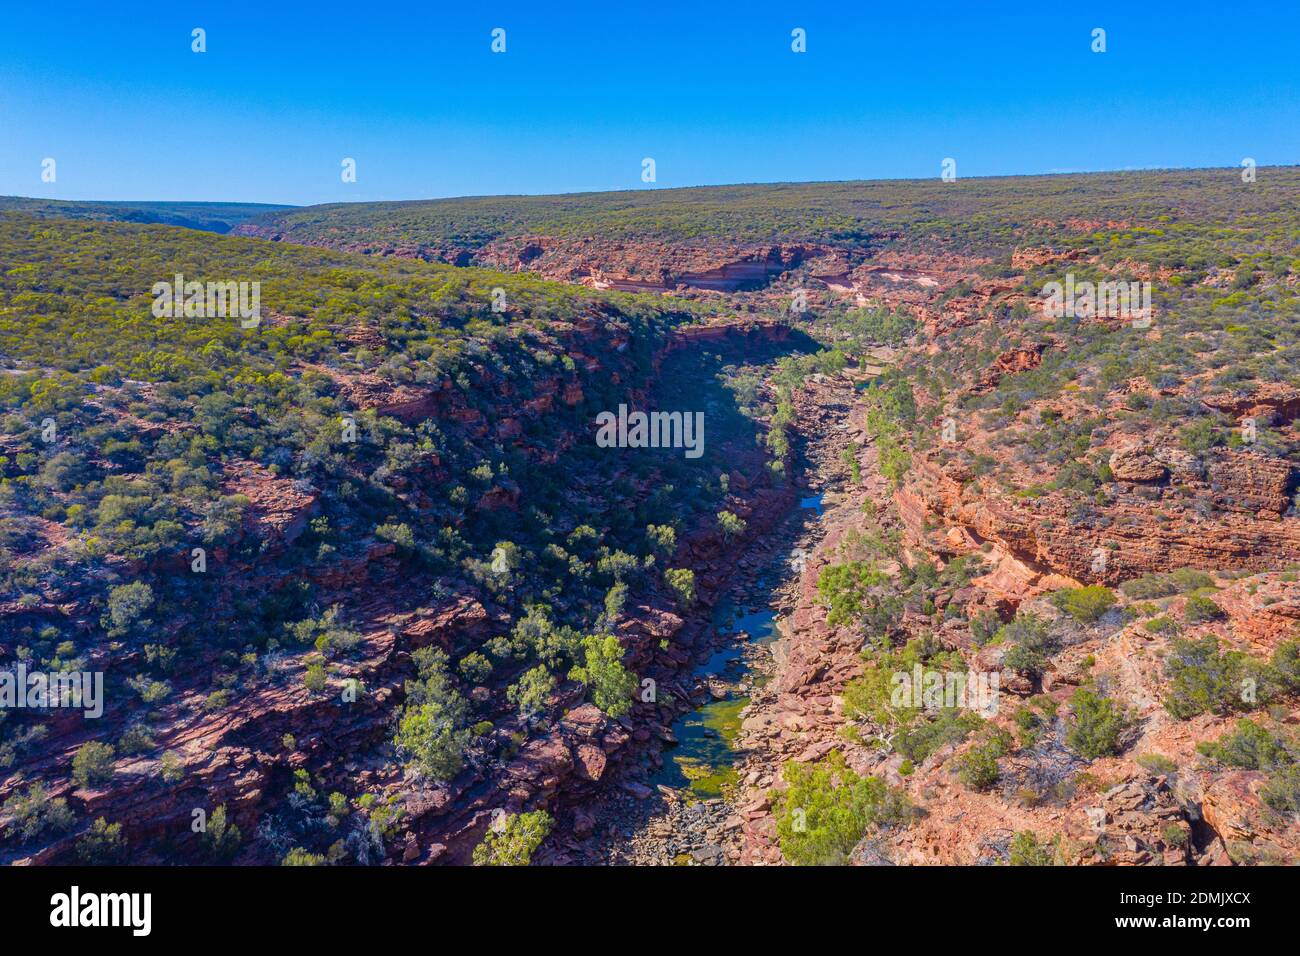 Z bend at Kalbarri national park in Australia Stock Photo